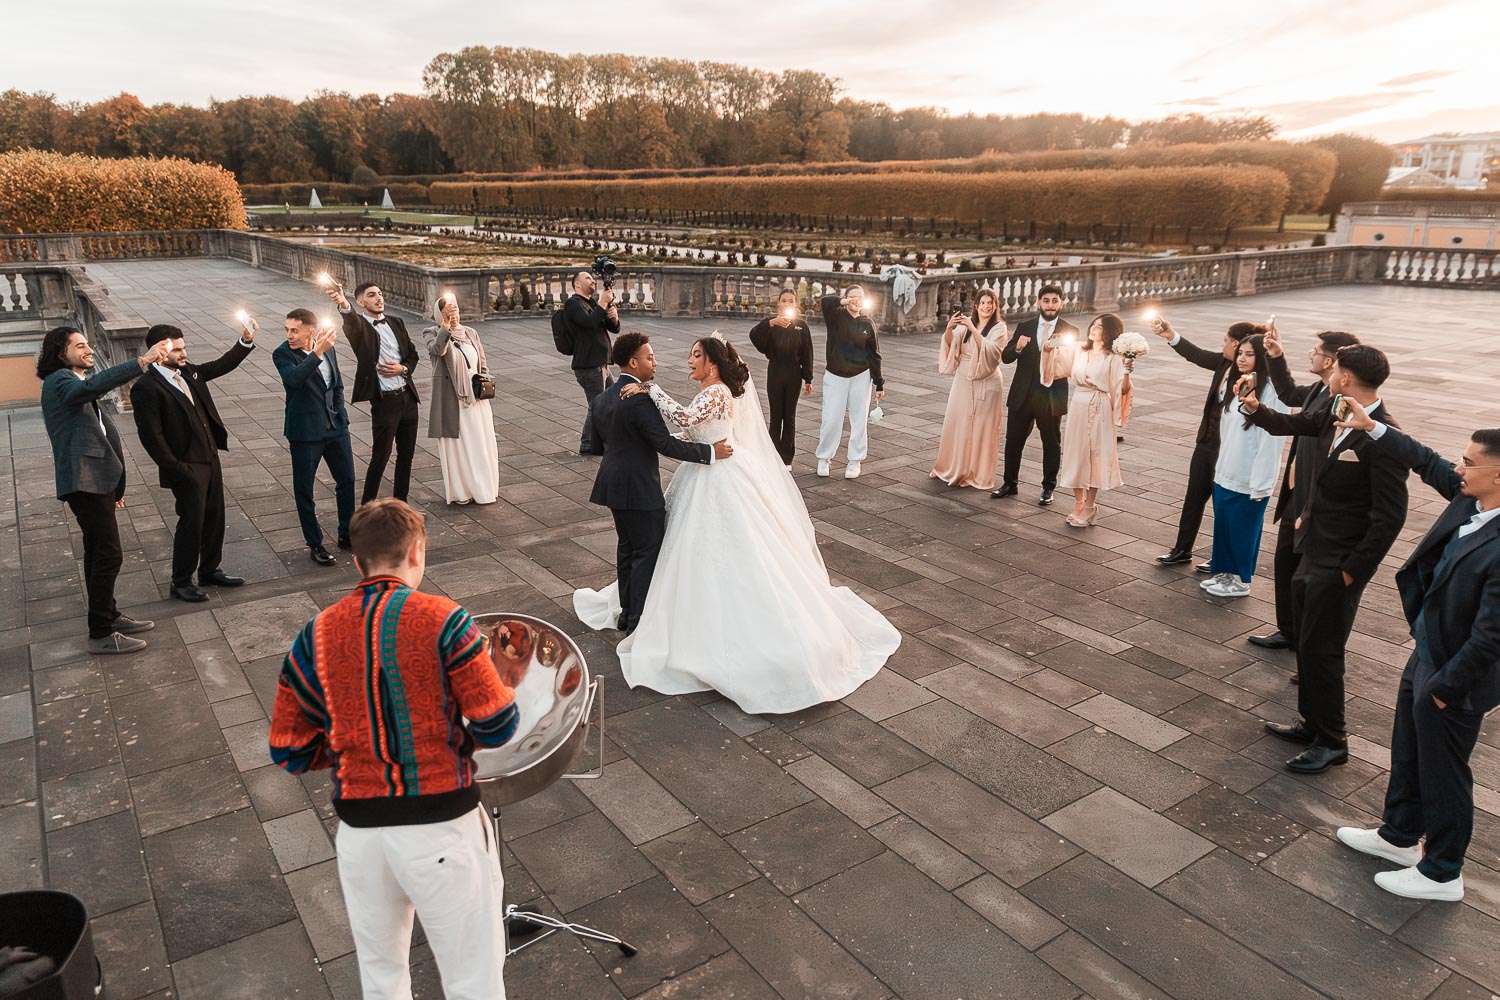 Ein Steeldrum Straßenmusiker spielt moderne Musik, während das Brautpaar von ihren Freunden umgeben tanzt. Die Szene spielt sich auf der Terrasse des Schlosses in Augustusburg ab, im Hintergrund ist der Schlossgarten zu sehen.